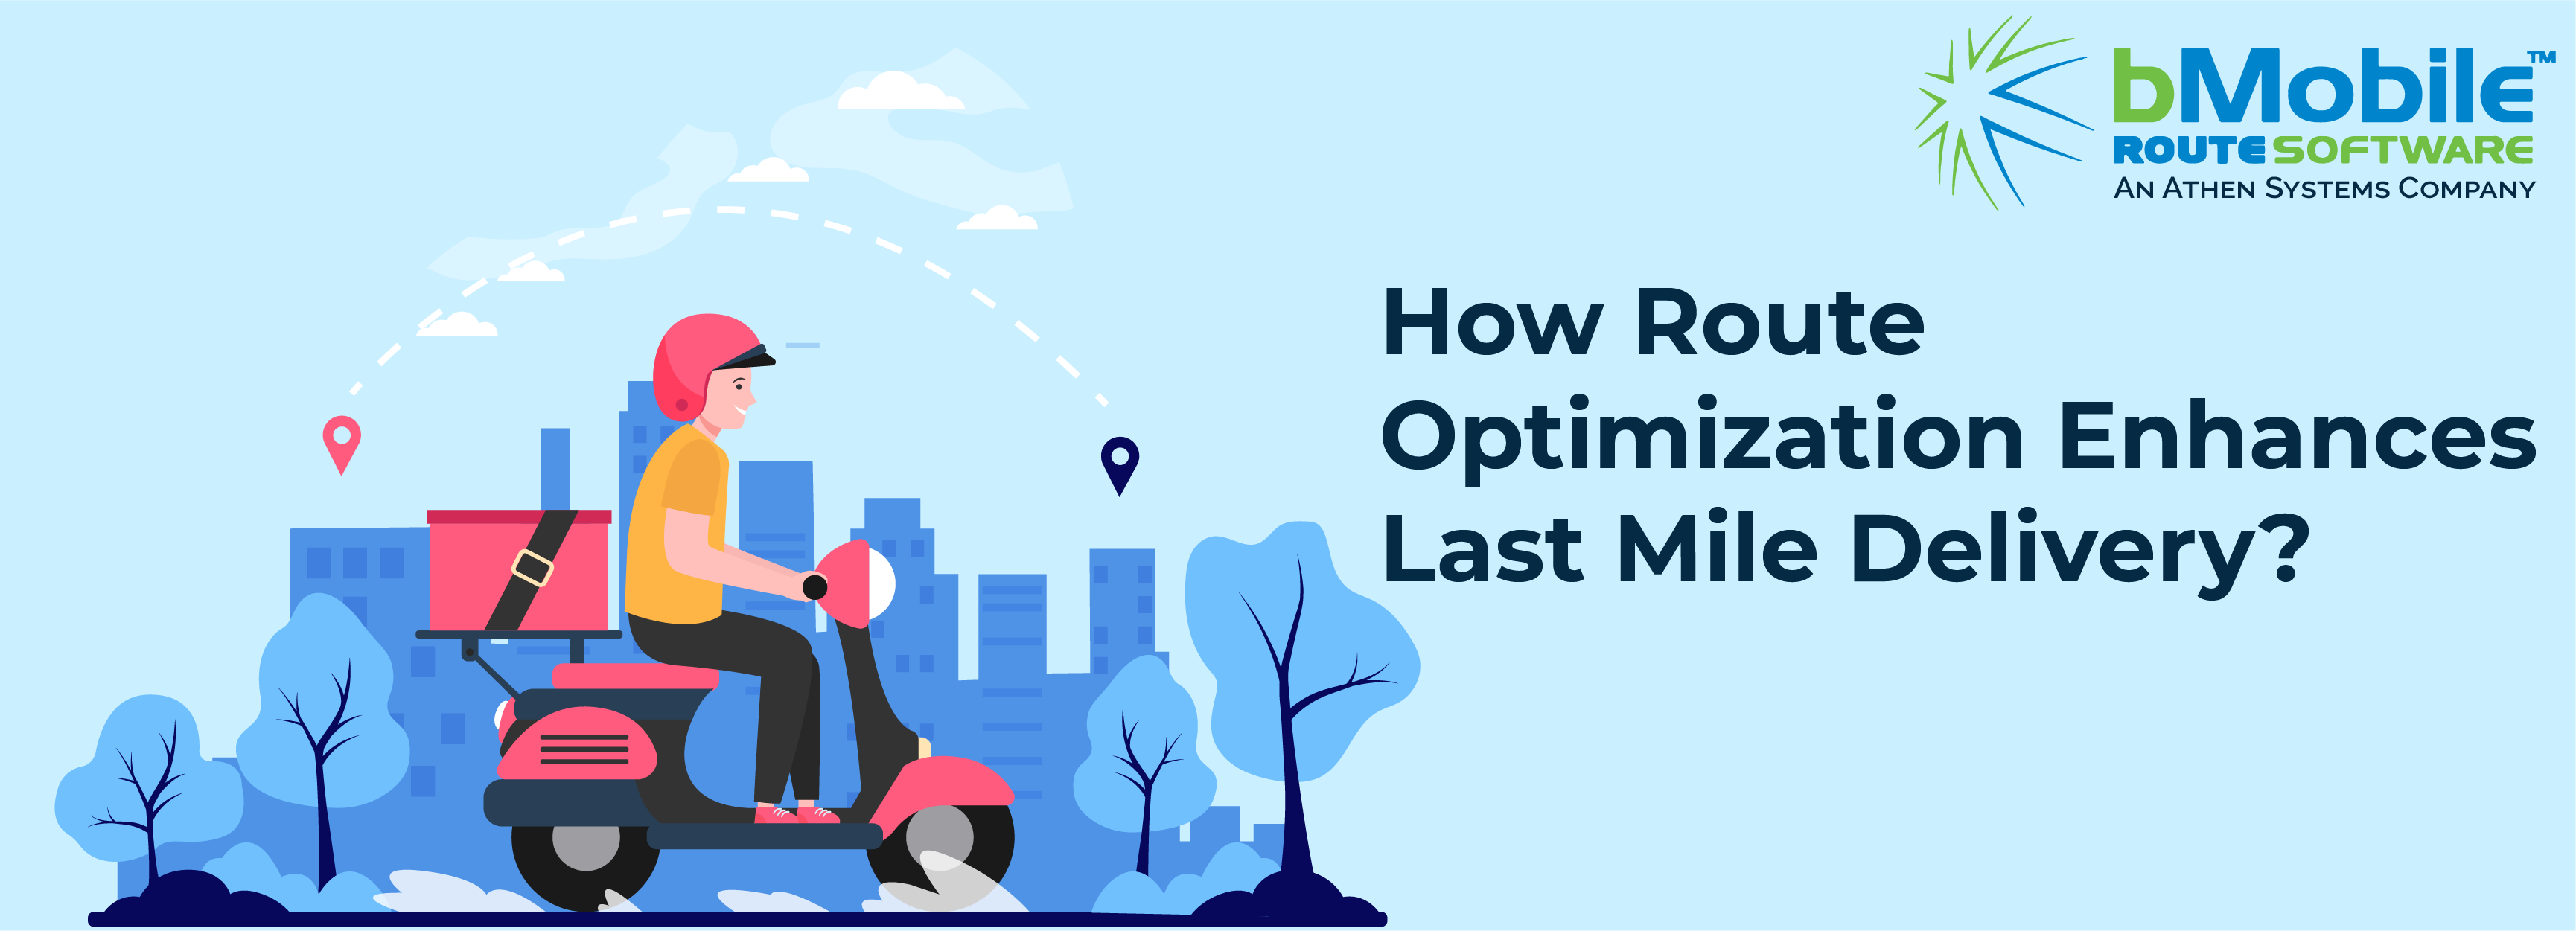 How Route Optimization Enhances Last Mile Delivery?